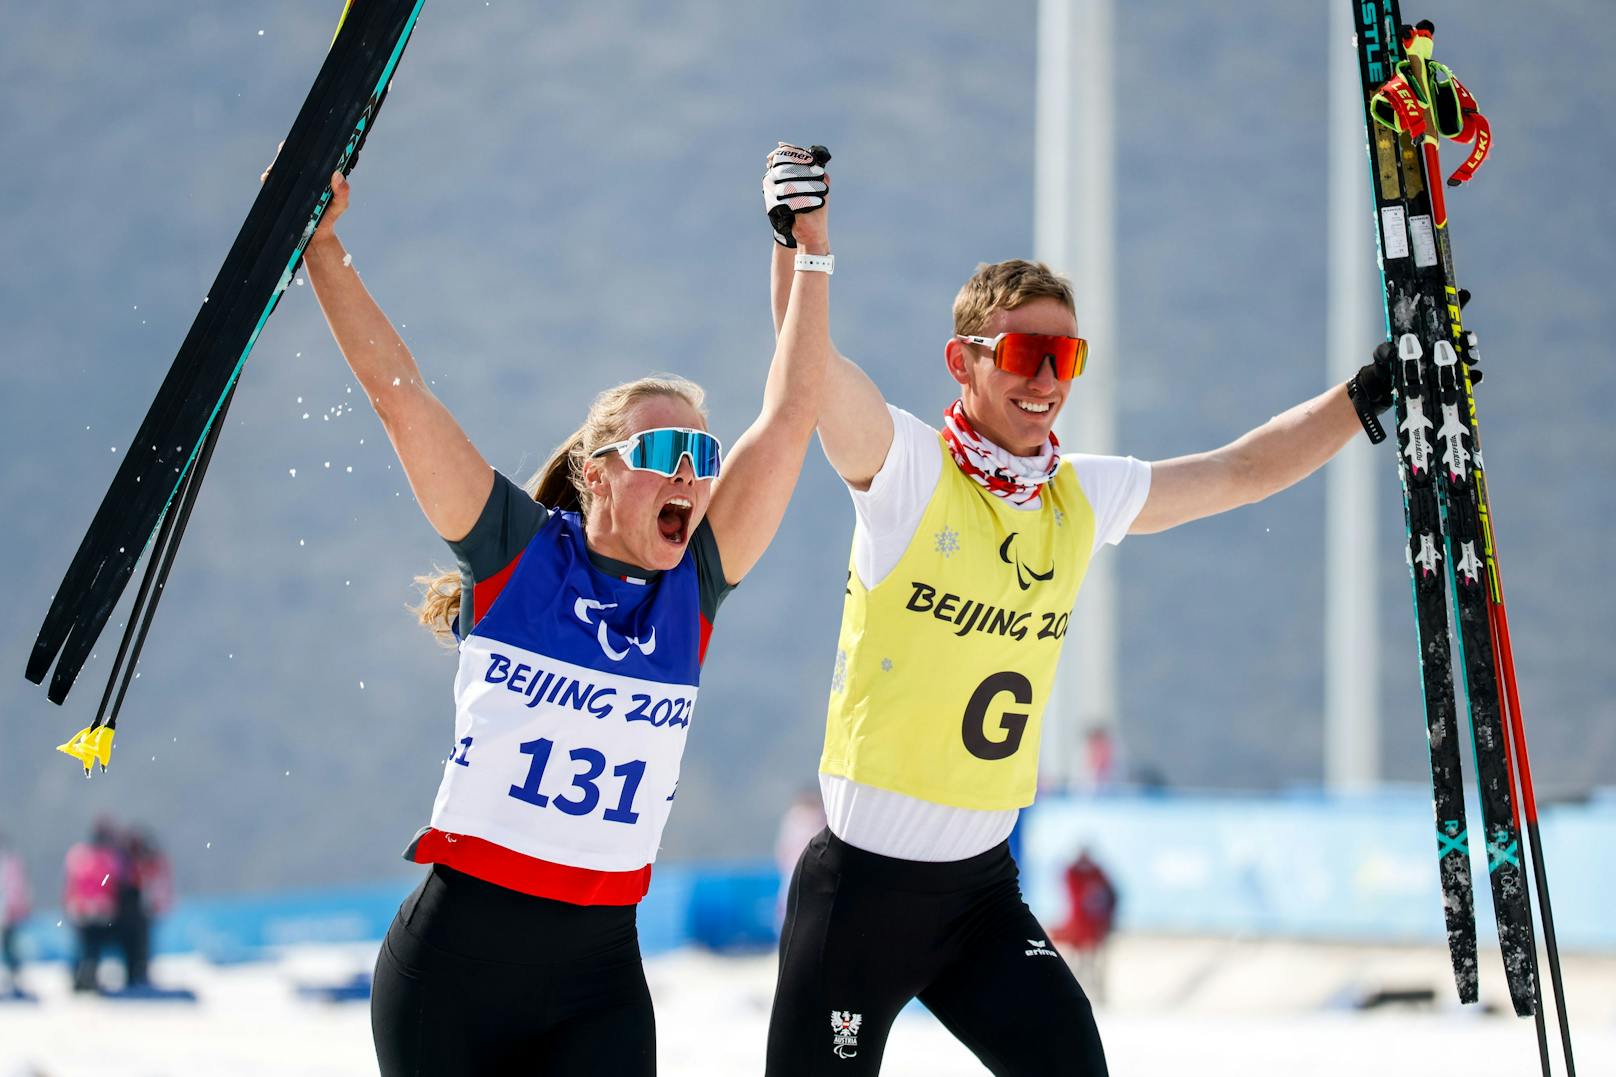 Langlauf-Gold für Österreich bei Paralympics